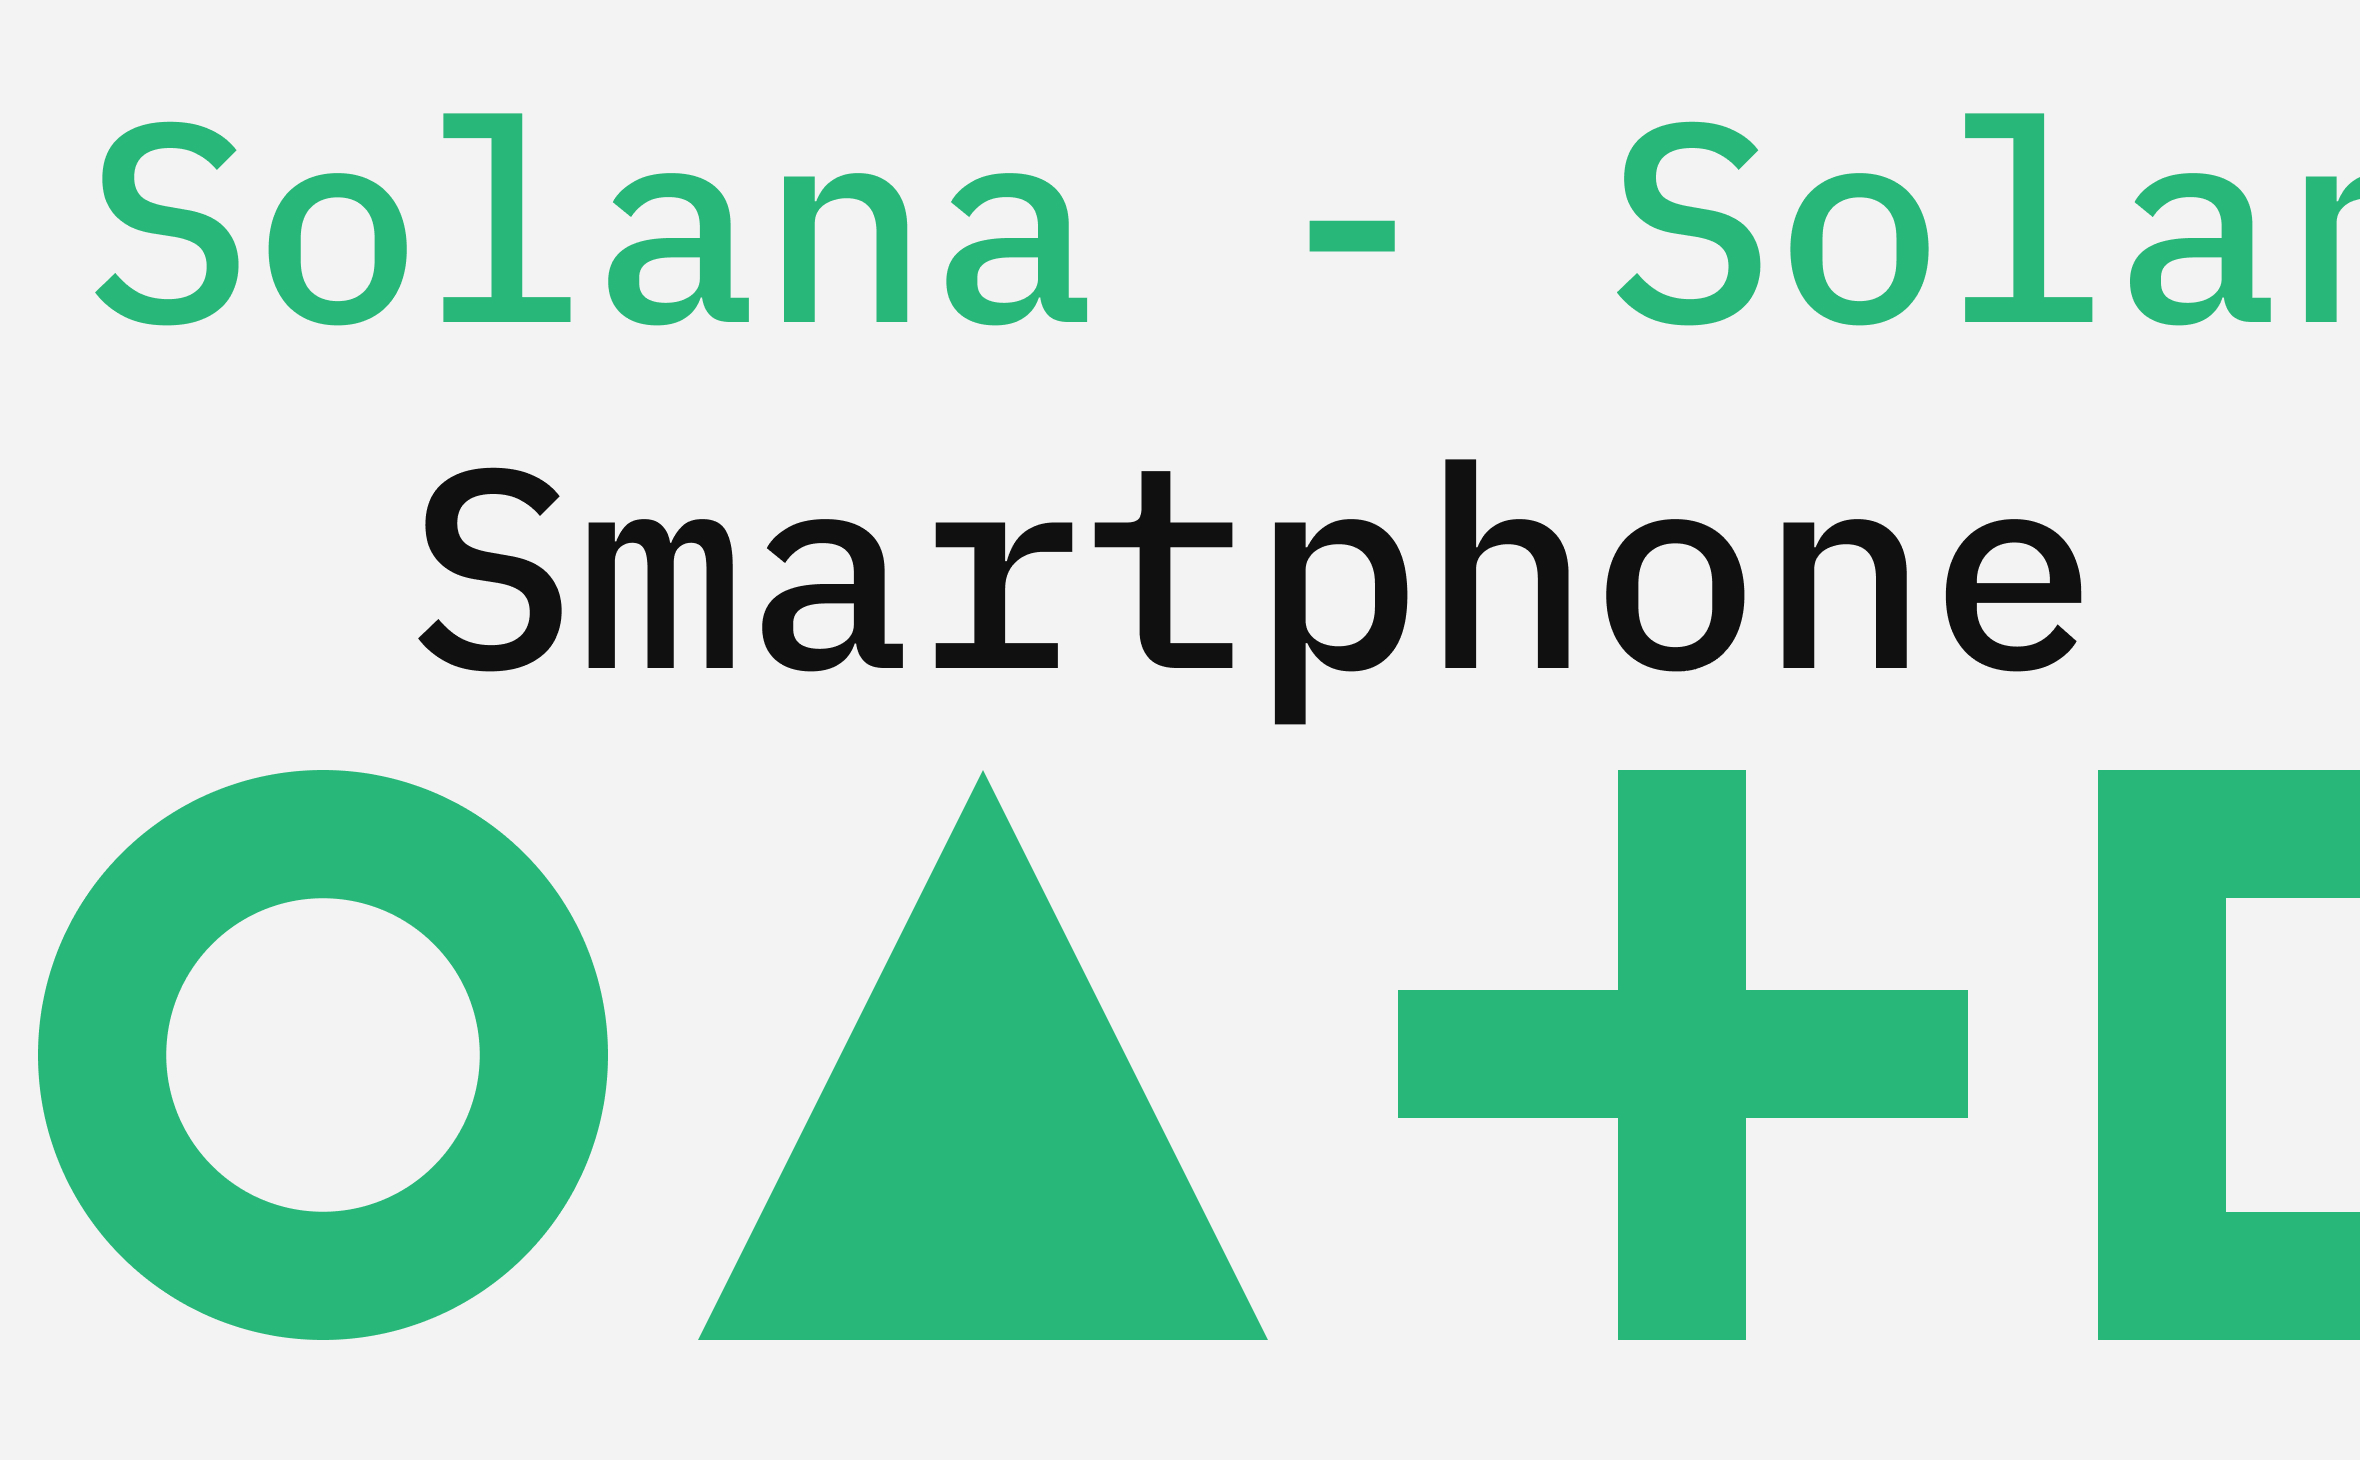 Разработчики криптовалюты Solana выпустят новую версию своего смартфона